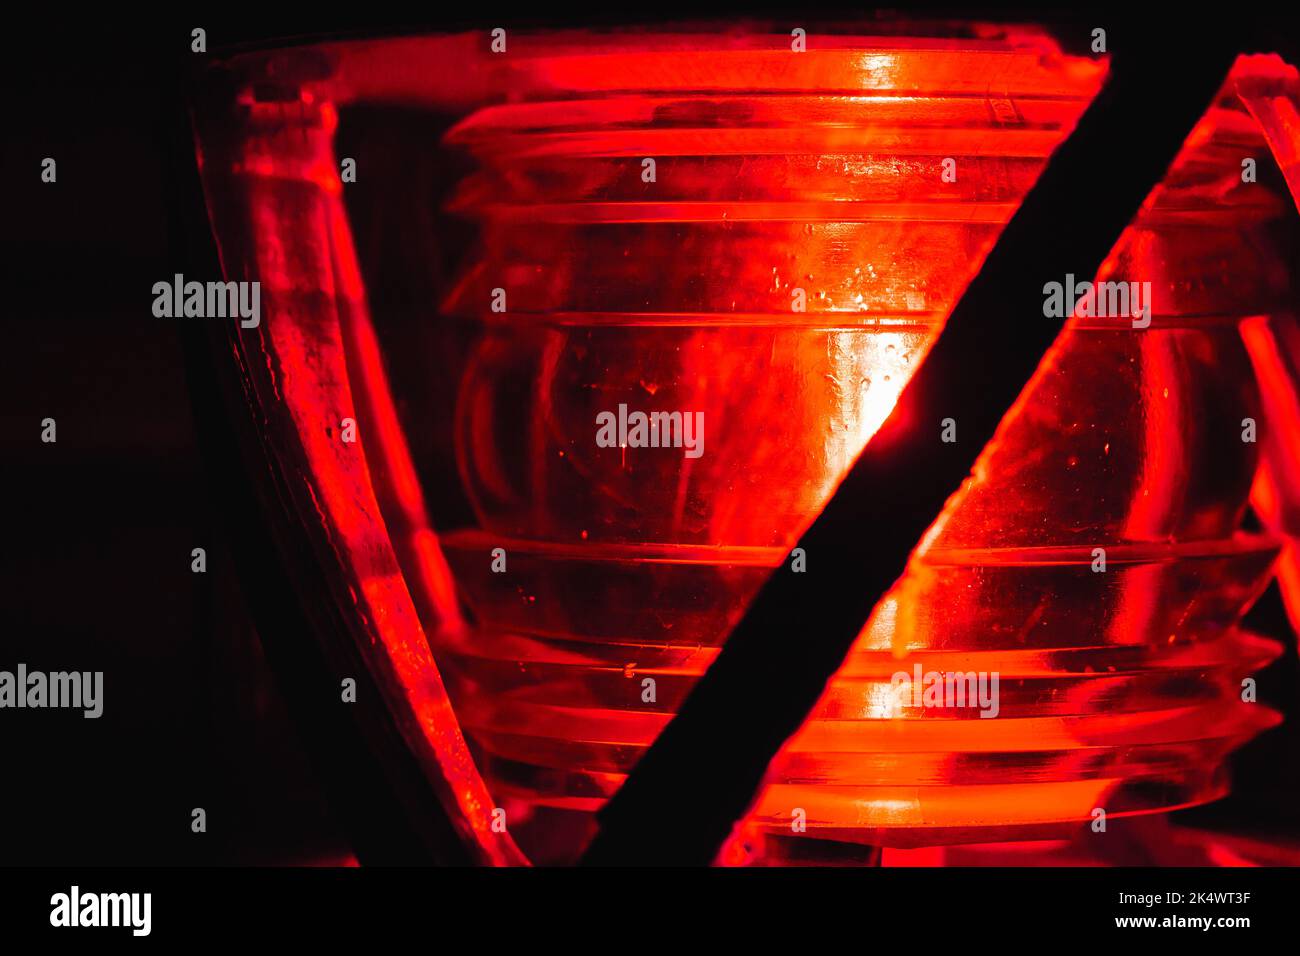 La lampada rossa si illumina in una cornice metallica sulla parte superiore di un faro, foto ravvicinata con messa a fuoco morbida selettiva Foto Stock